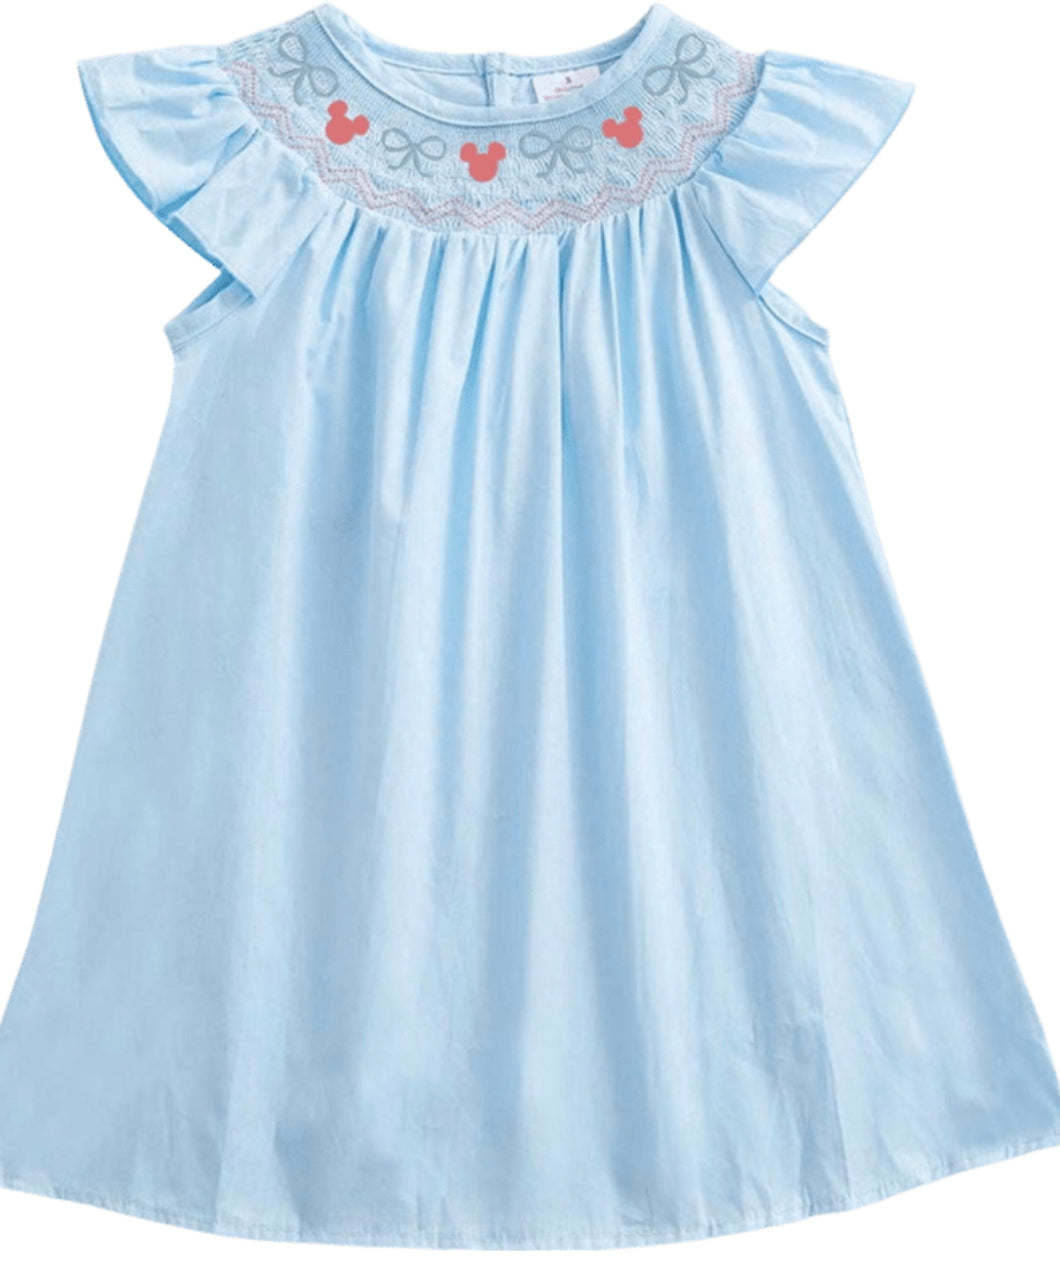 Minnie Bows Smocked Dress